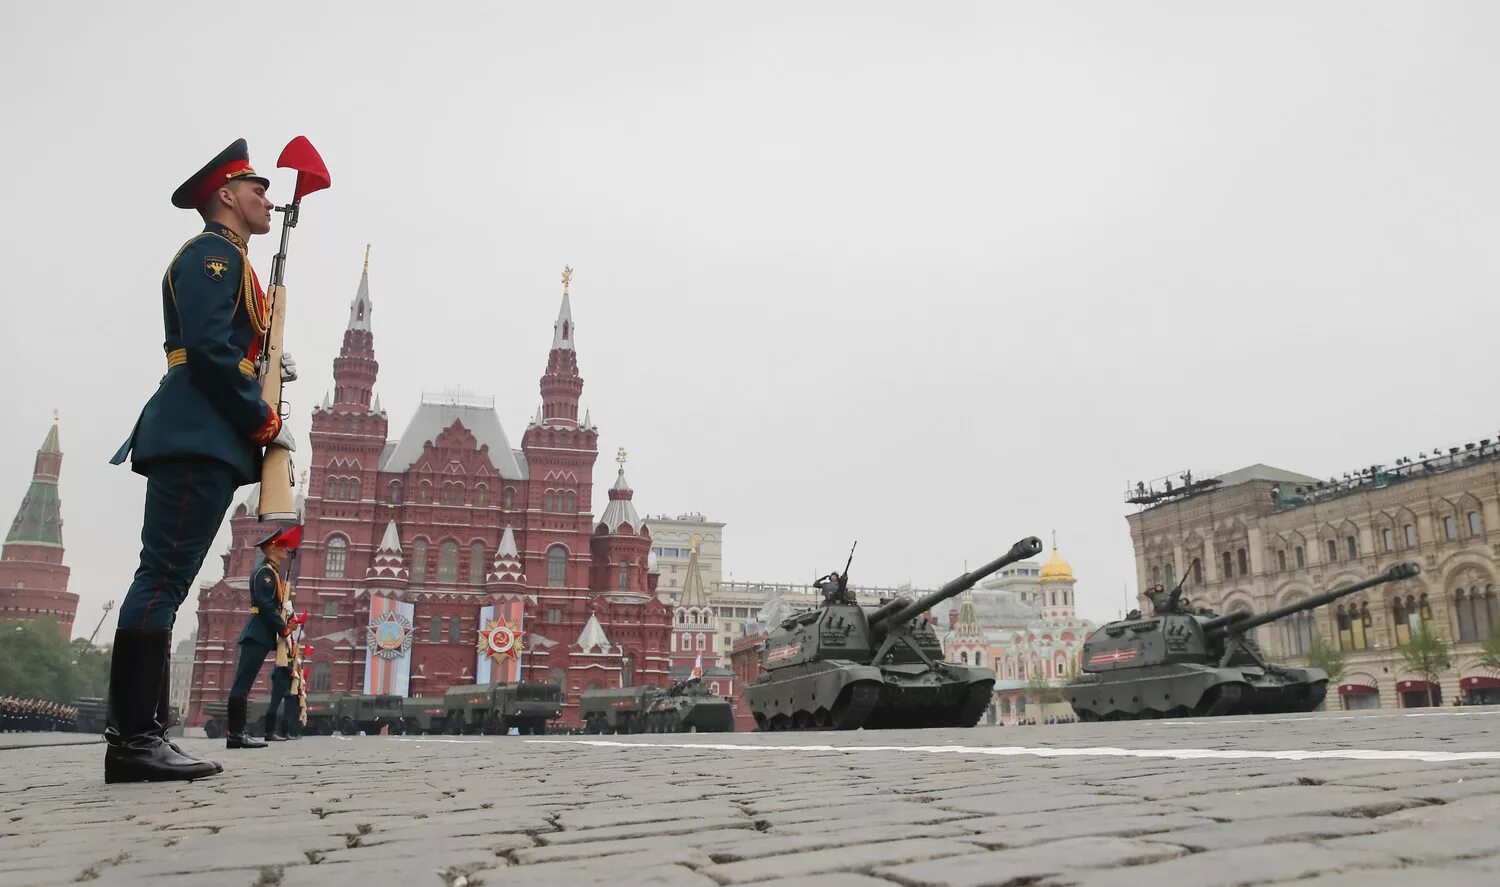 9 май кремль. Парад на красной площади 9 мая. Москва красная площадь день Победы. Кремль парад 9 мая. Красная площадь 9 мая.